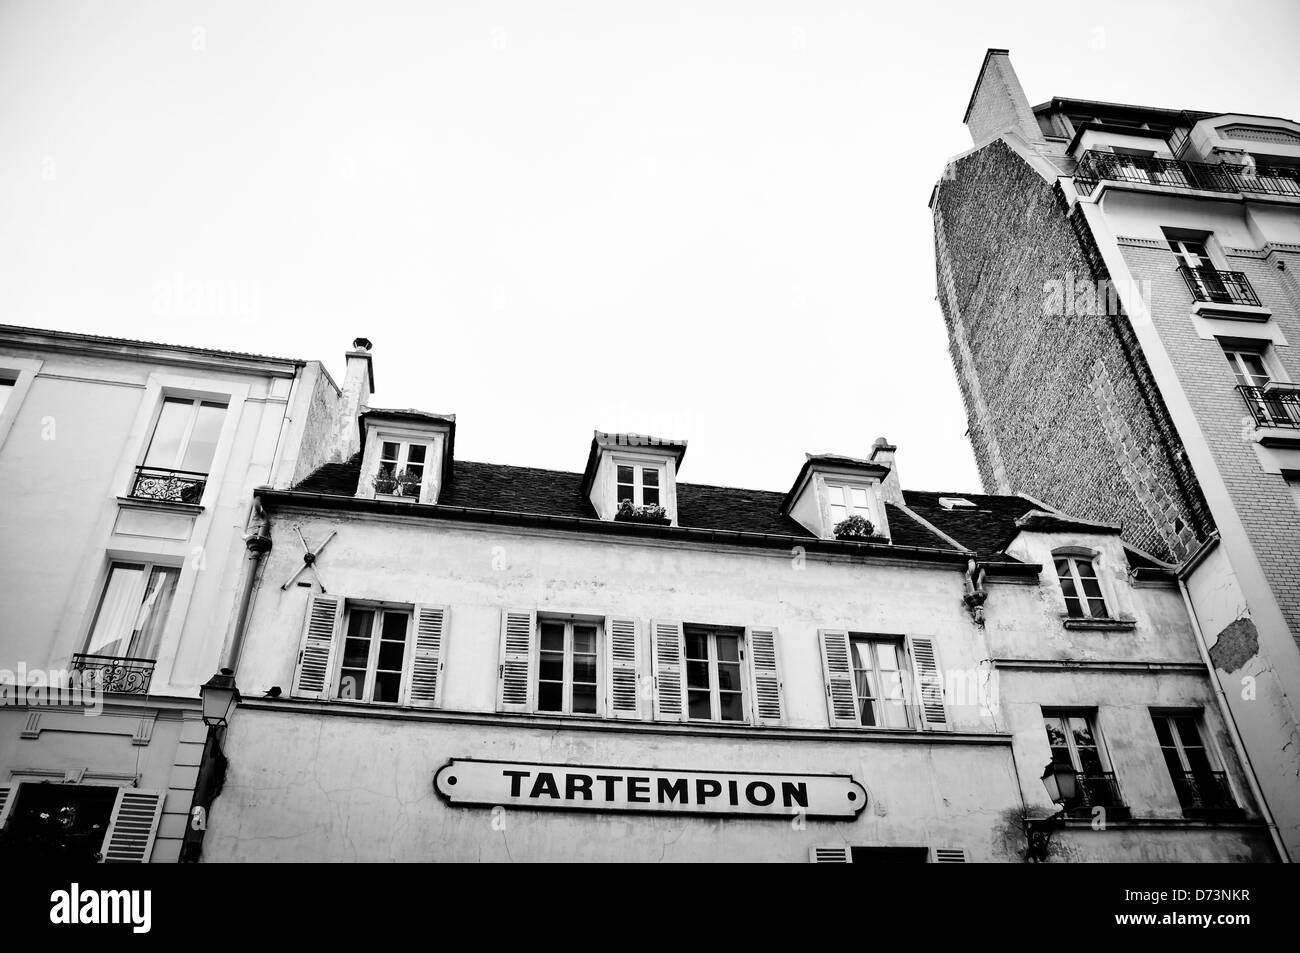 Straßen von Montmartre, Paris Stockfoto